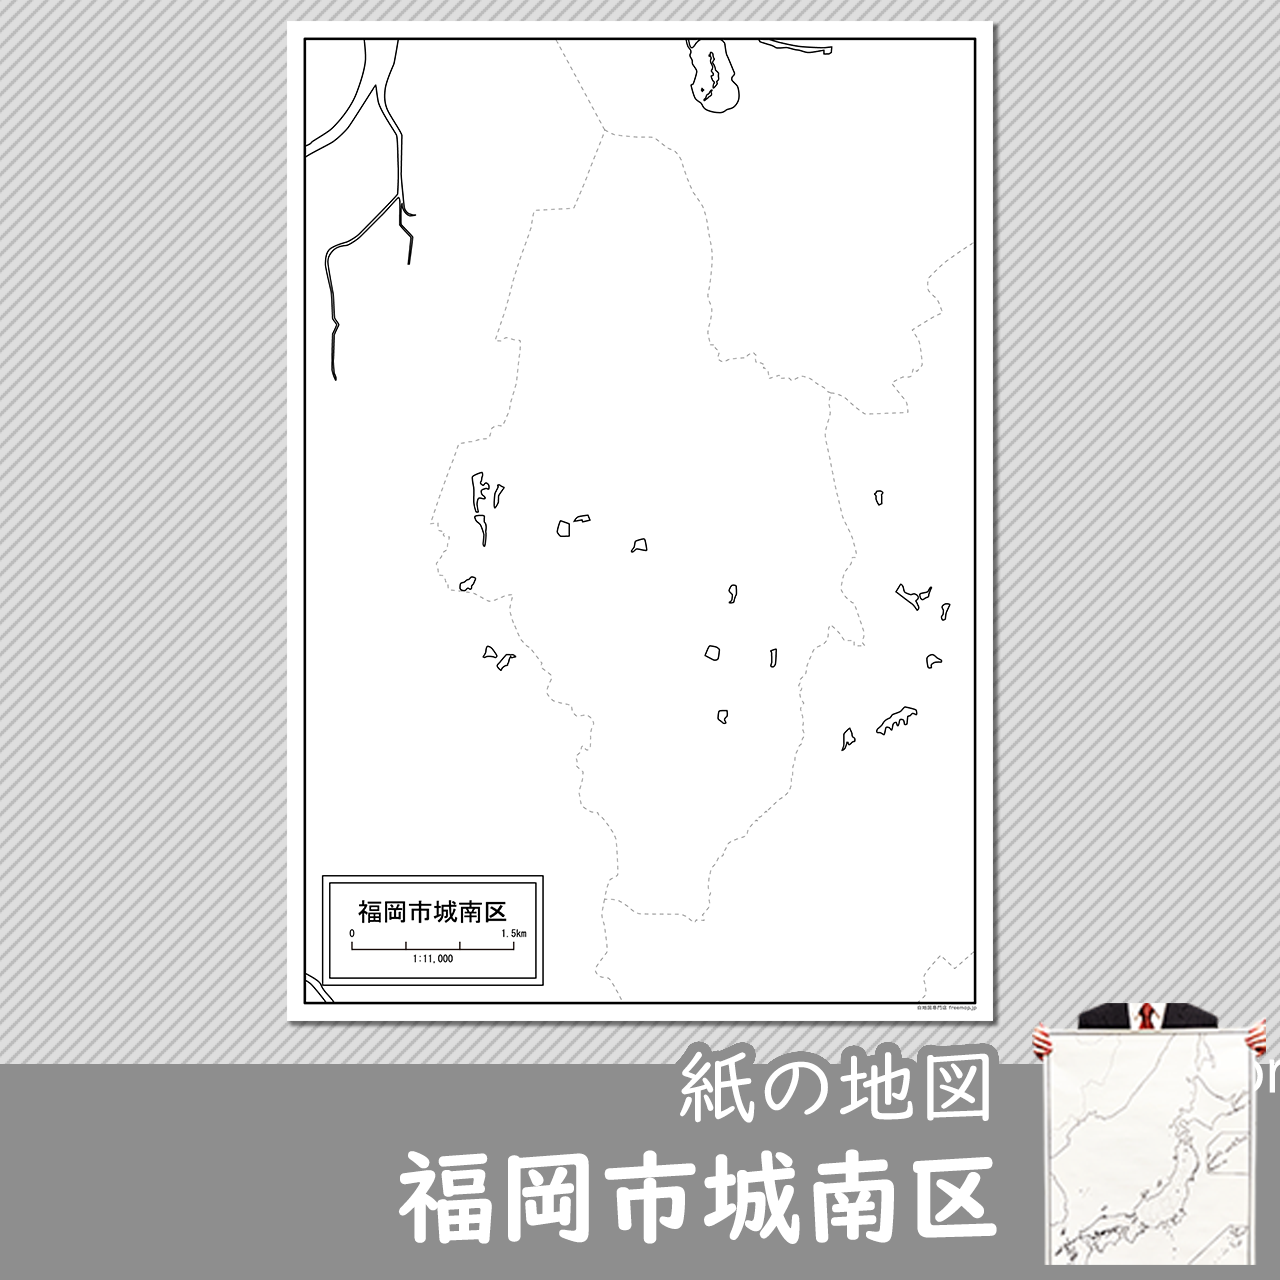 福岡市城南区の紙の白地図